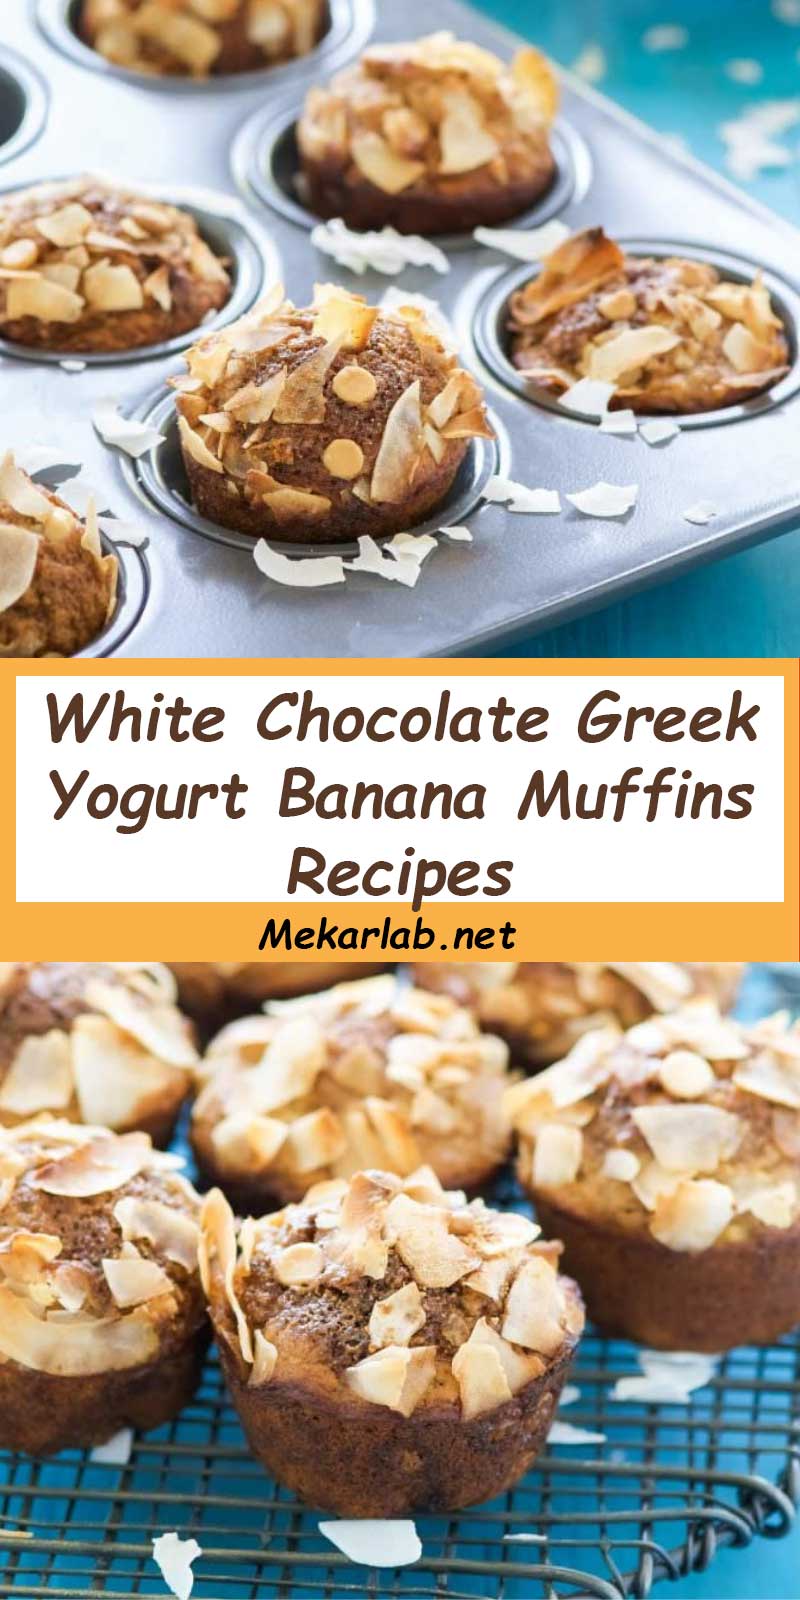 White Chocolate Greek Yogurt Banana Muffins Recipes